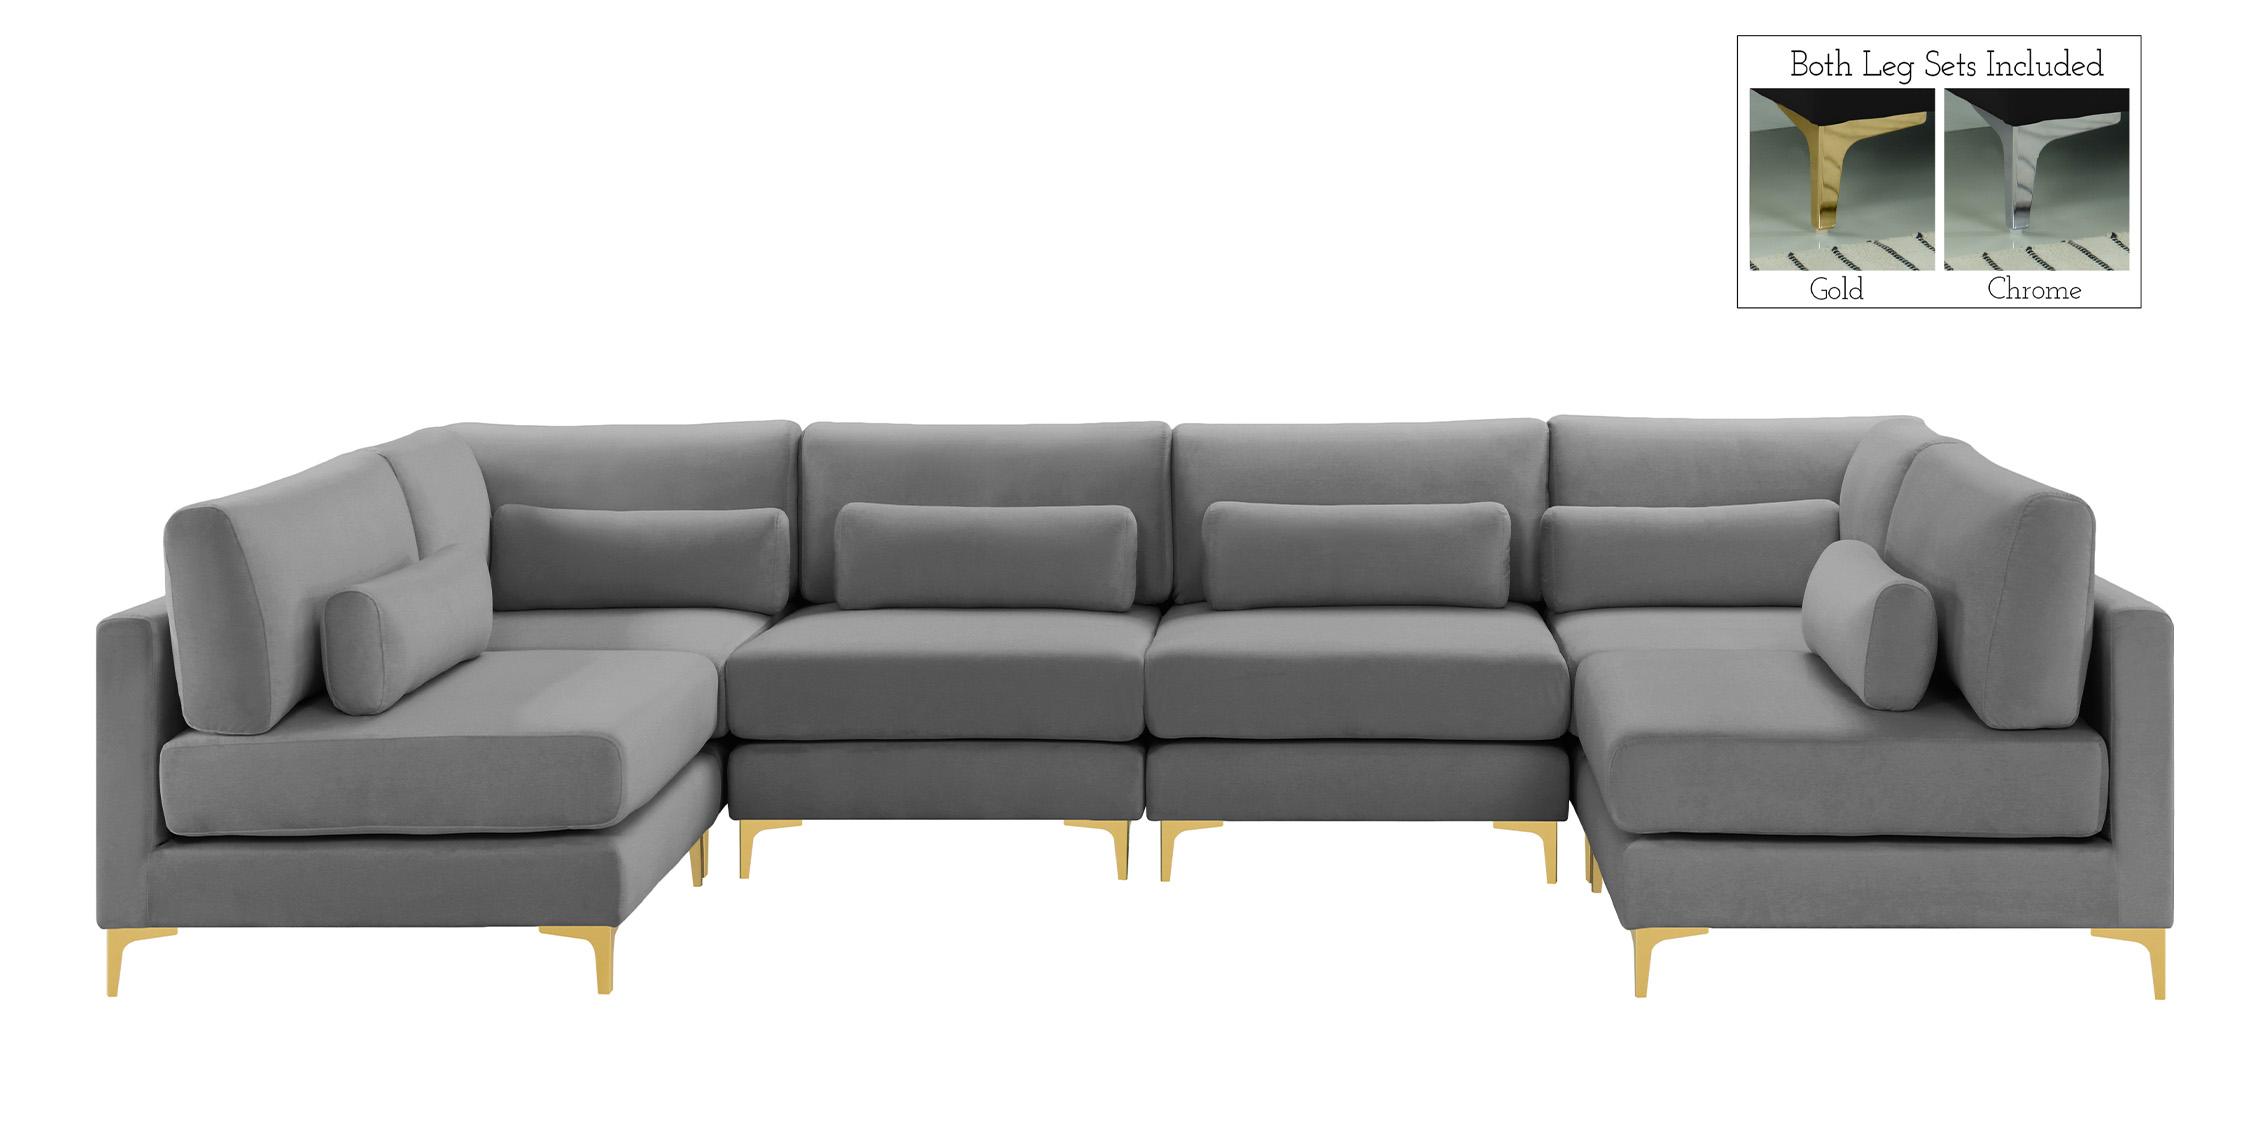 

    
Meridian Furniture JULIA 605Grey-Sec6C Modular Sectional Sofa Gray 605Grey-Sec6C
